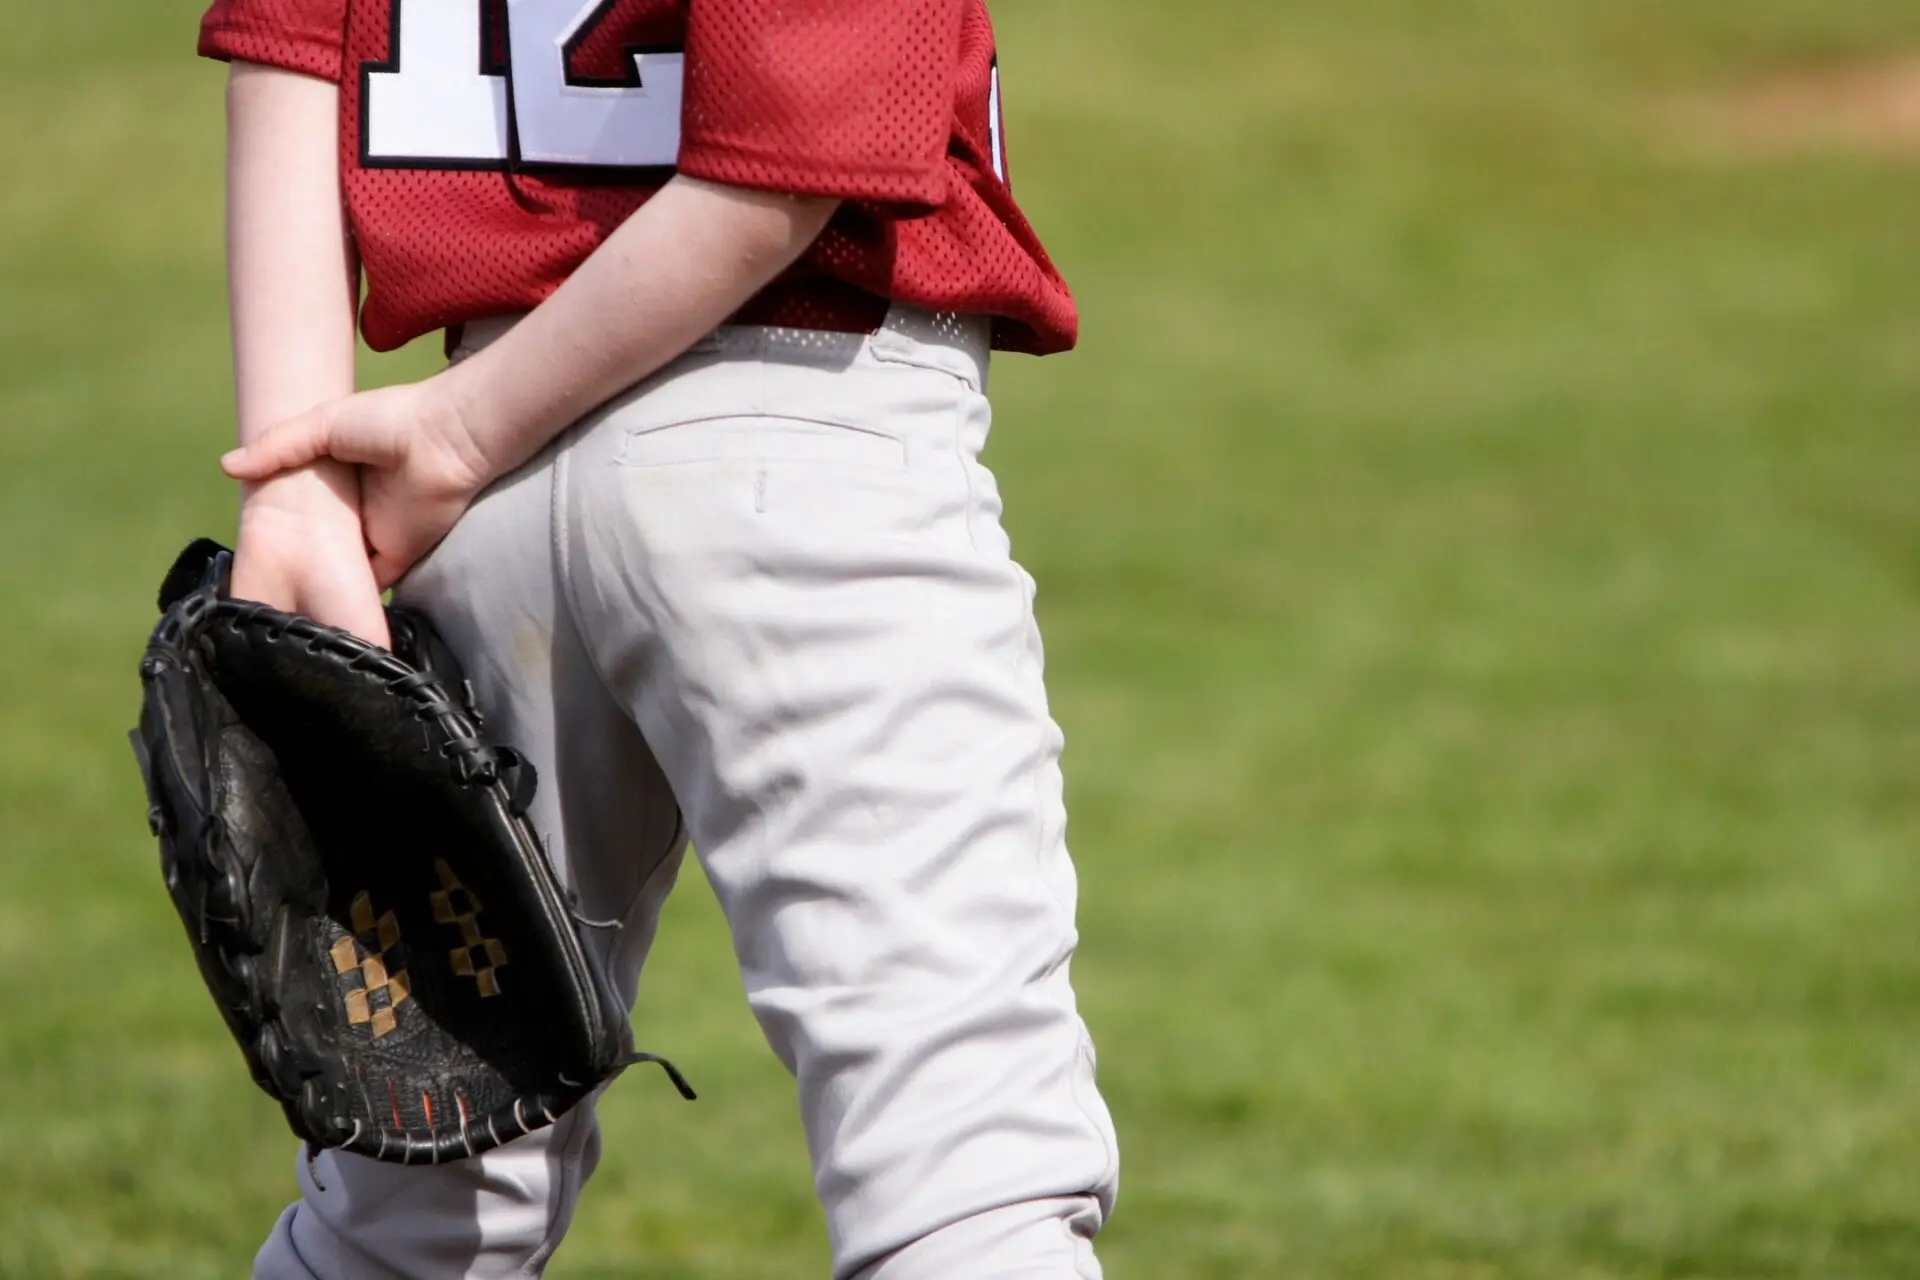 A boy wearing a baseball mitt.